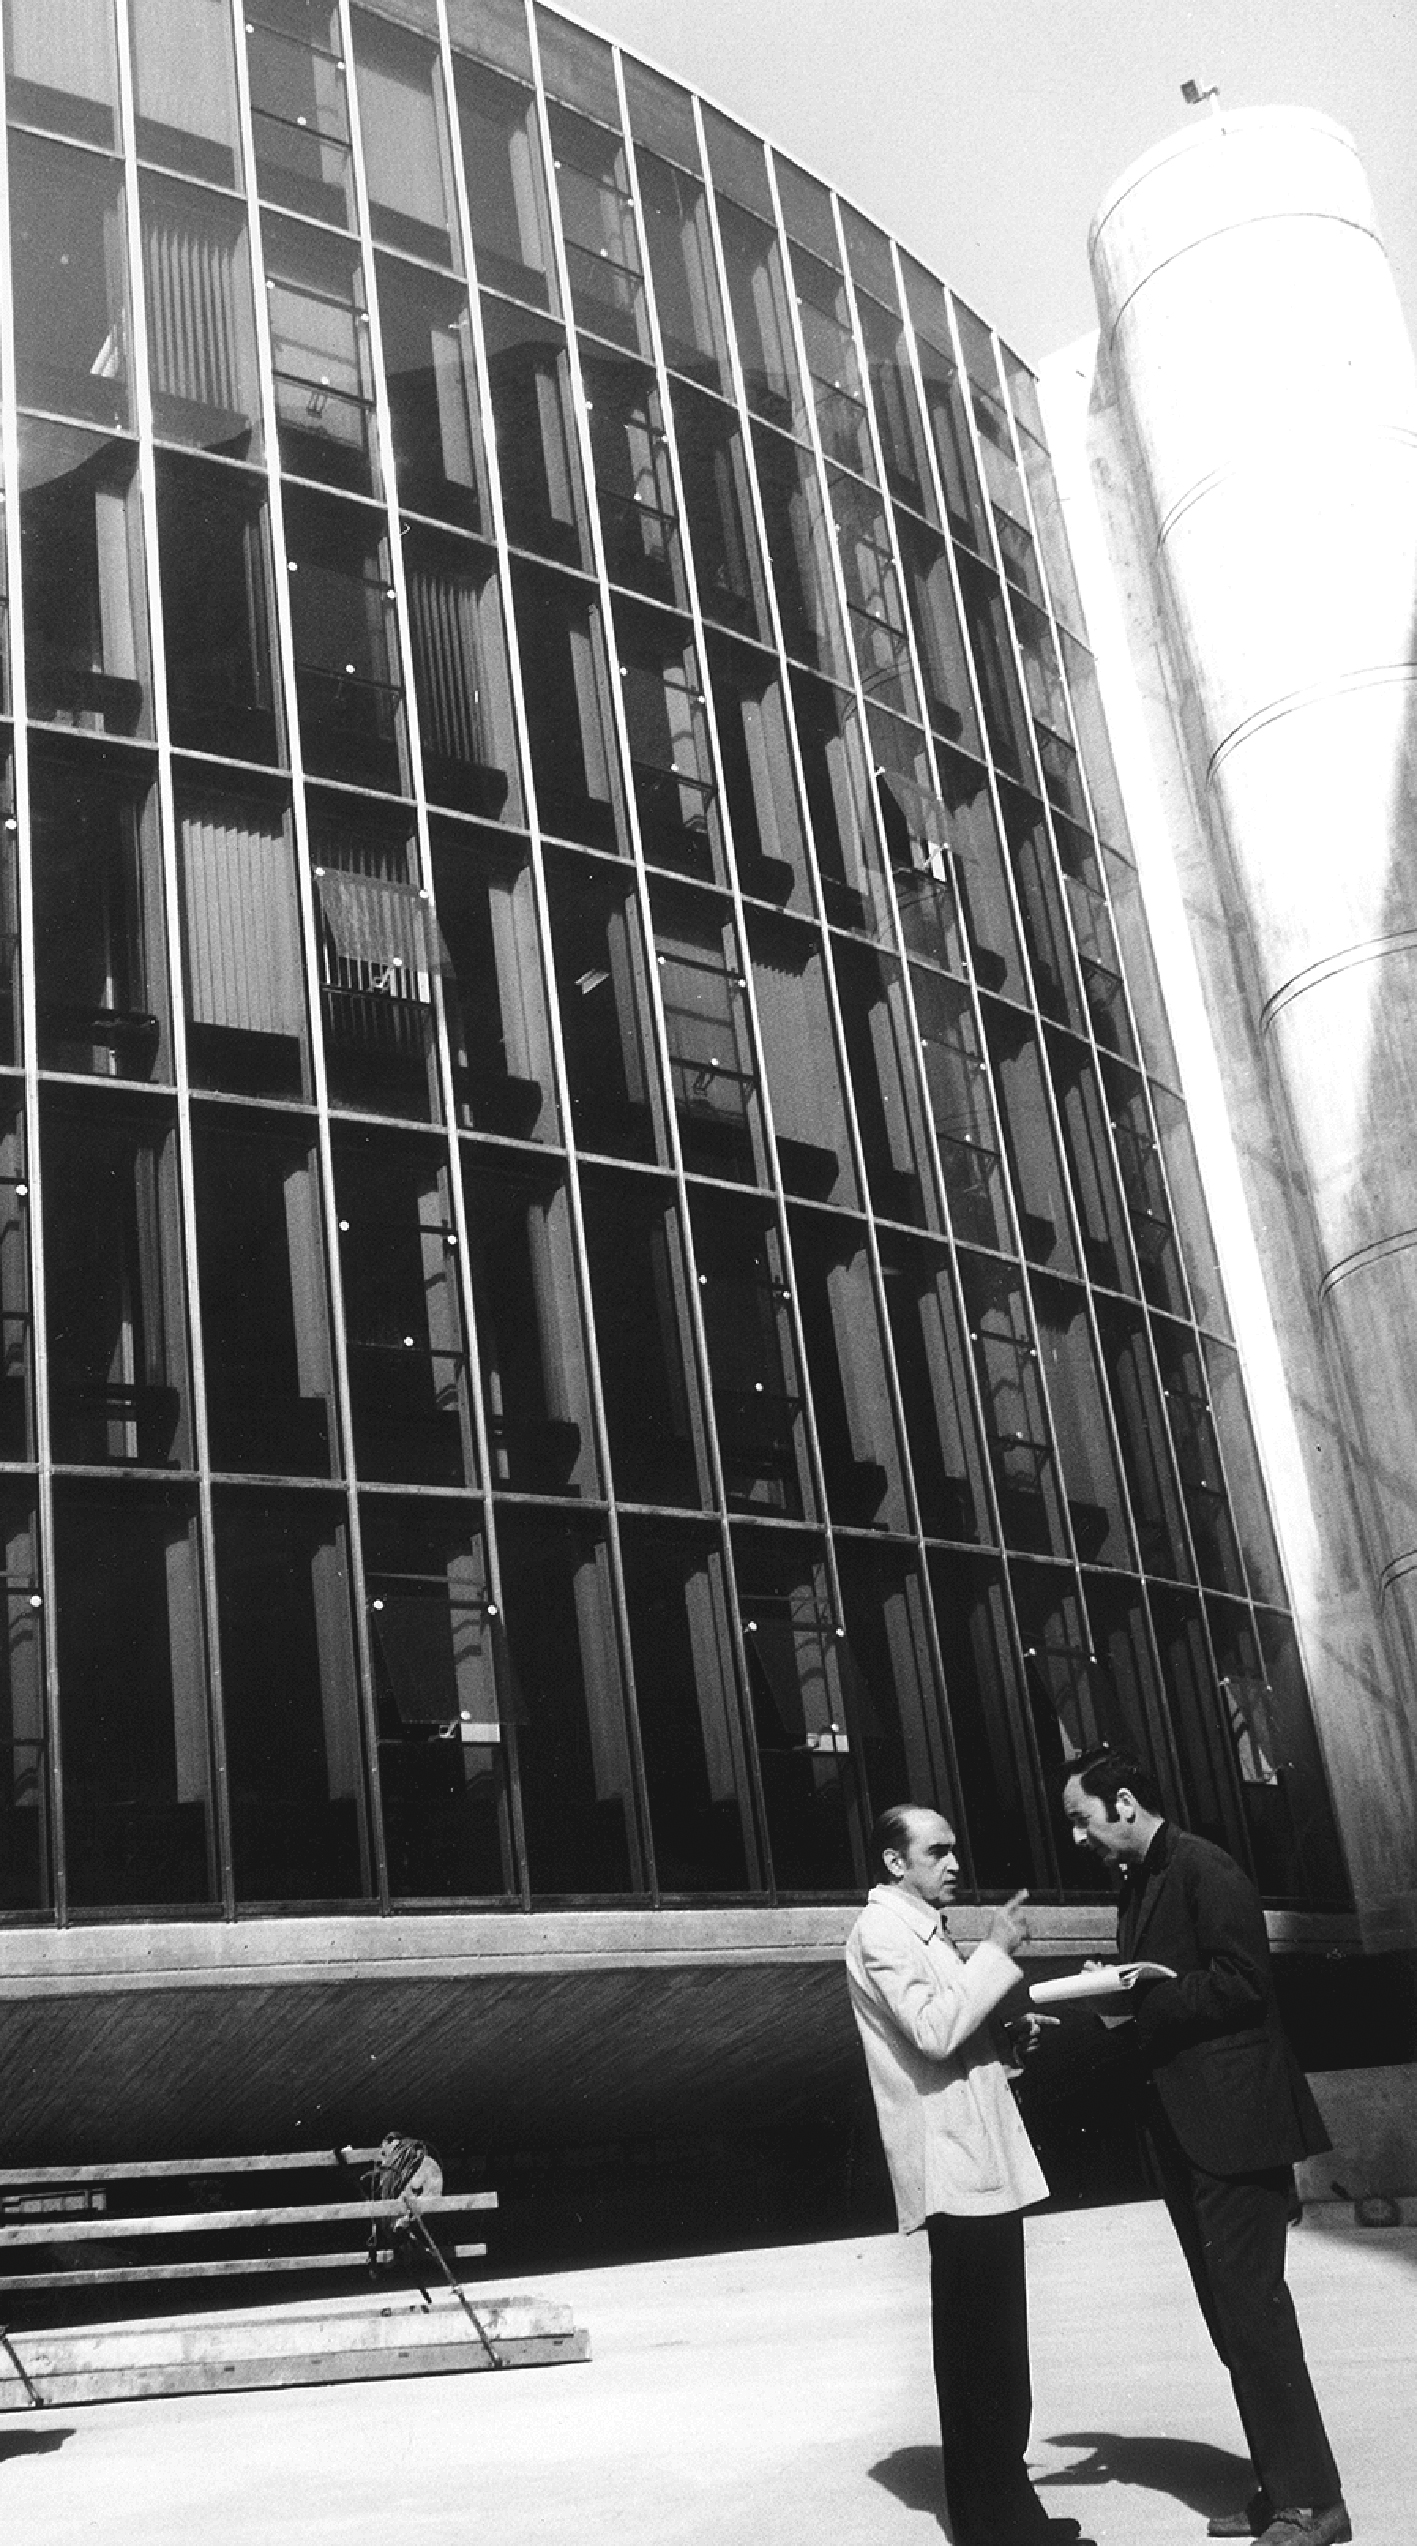 Siège du Comité central du Parti Communiste Français, Paris, 1970 (O. Niemeyer, arch.). O. Niemeyer devant la façade conçus par Jean Prouvé (J. Bédier, S. Binotto, Ishida, collaborateurs).